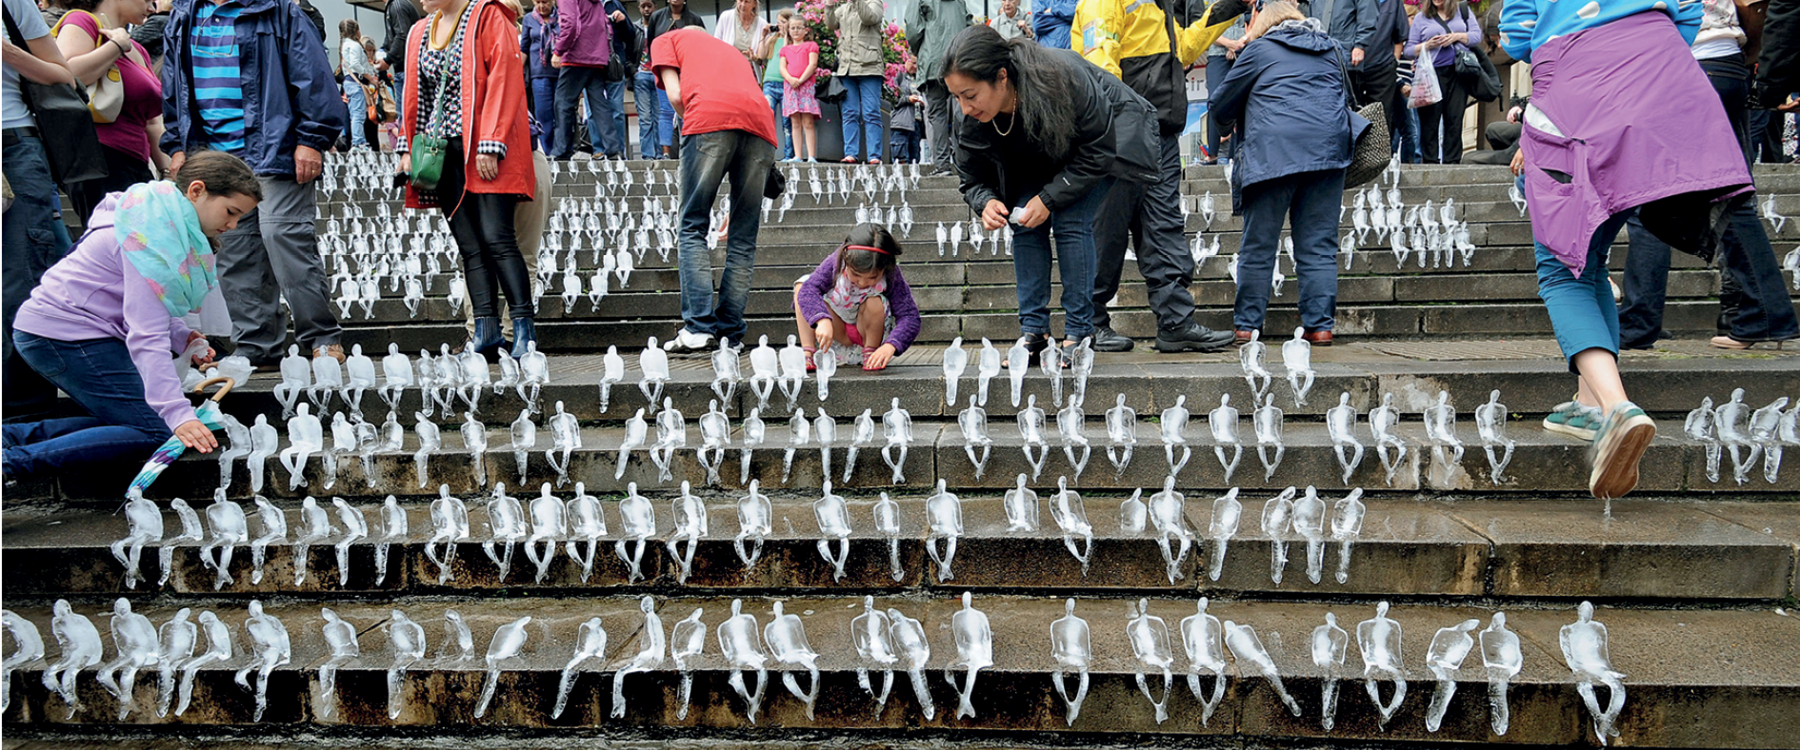 Fotografia. Nos degraus de uma escadaria há centenas de esculturas de gelo com formato de pessoas em miniatura sentadas de pernas cruzadas. Em volta das esculturas, há crianças e adultos que as observam.